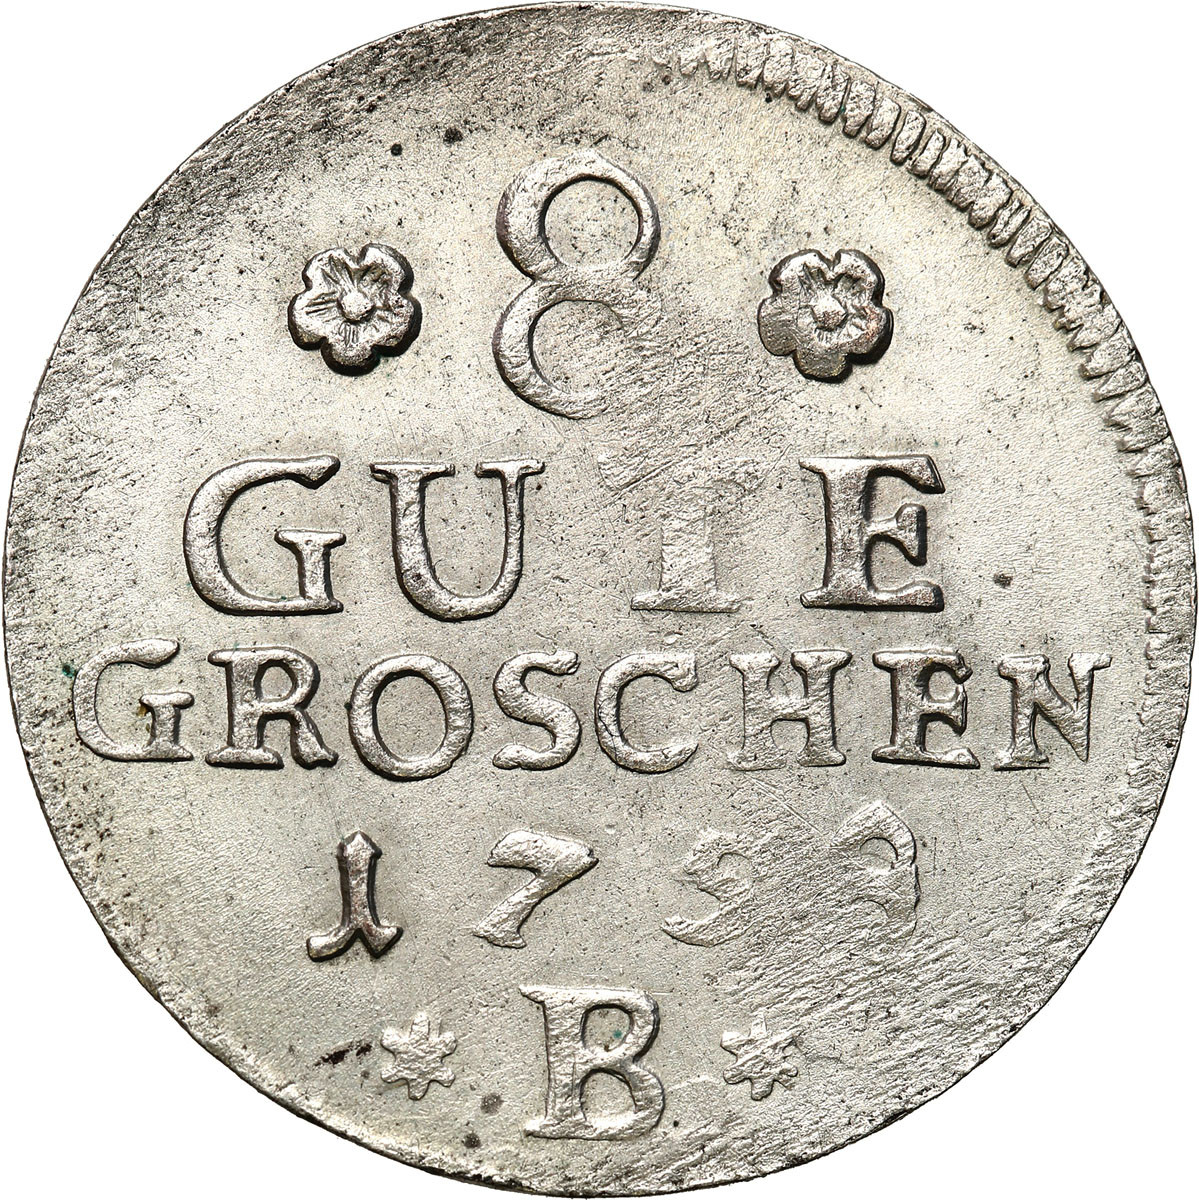 Niemcy. Anhalt. Victor Frederick (17211765). 8 Gute Groschen 1758 B, Bernburg